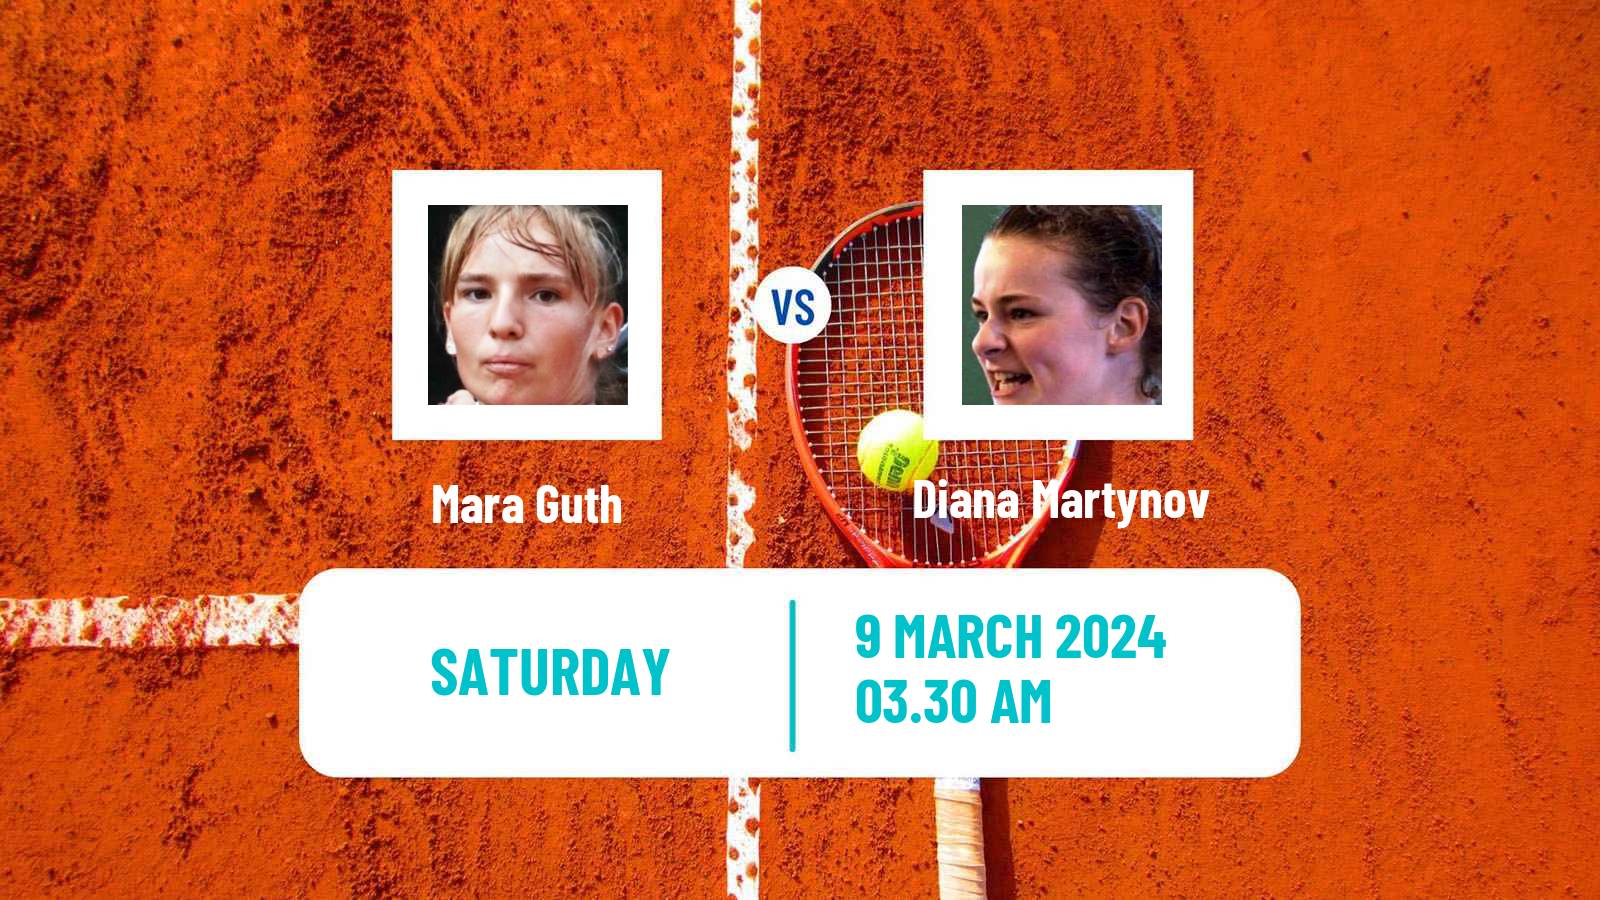 Tennis ITF W15 Monastir 8 Women Mara Guth - Diana Martynov